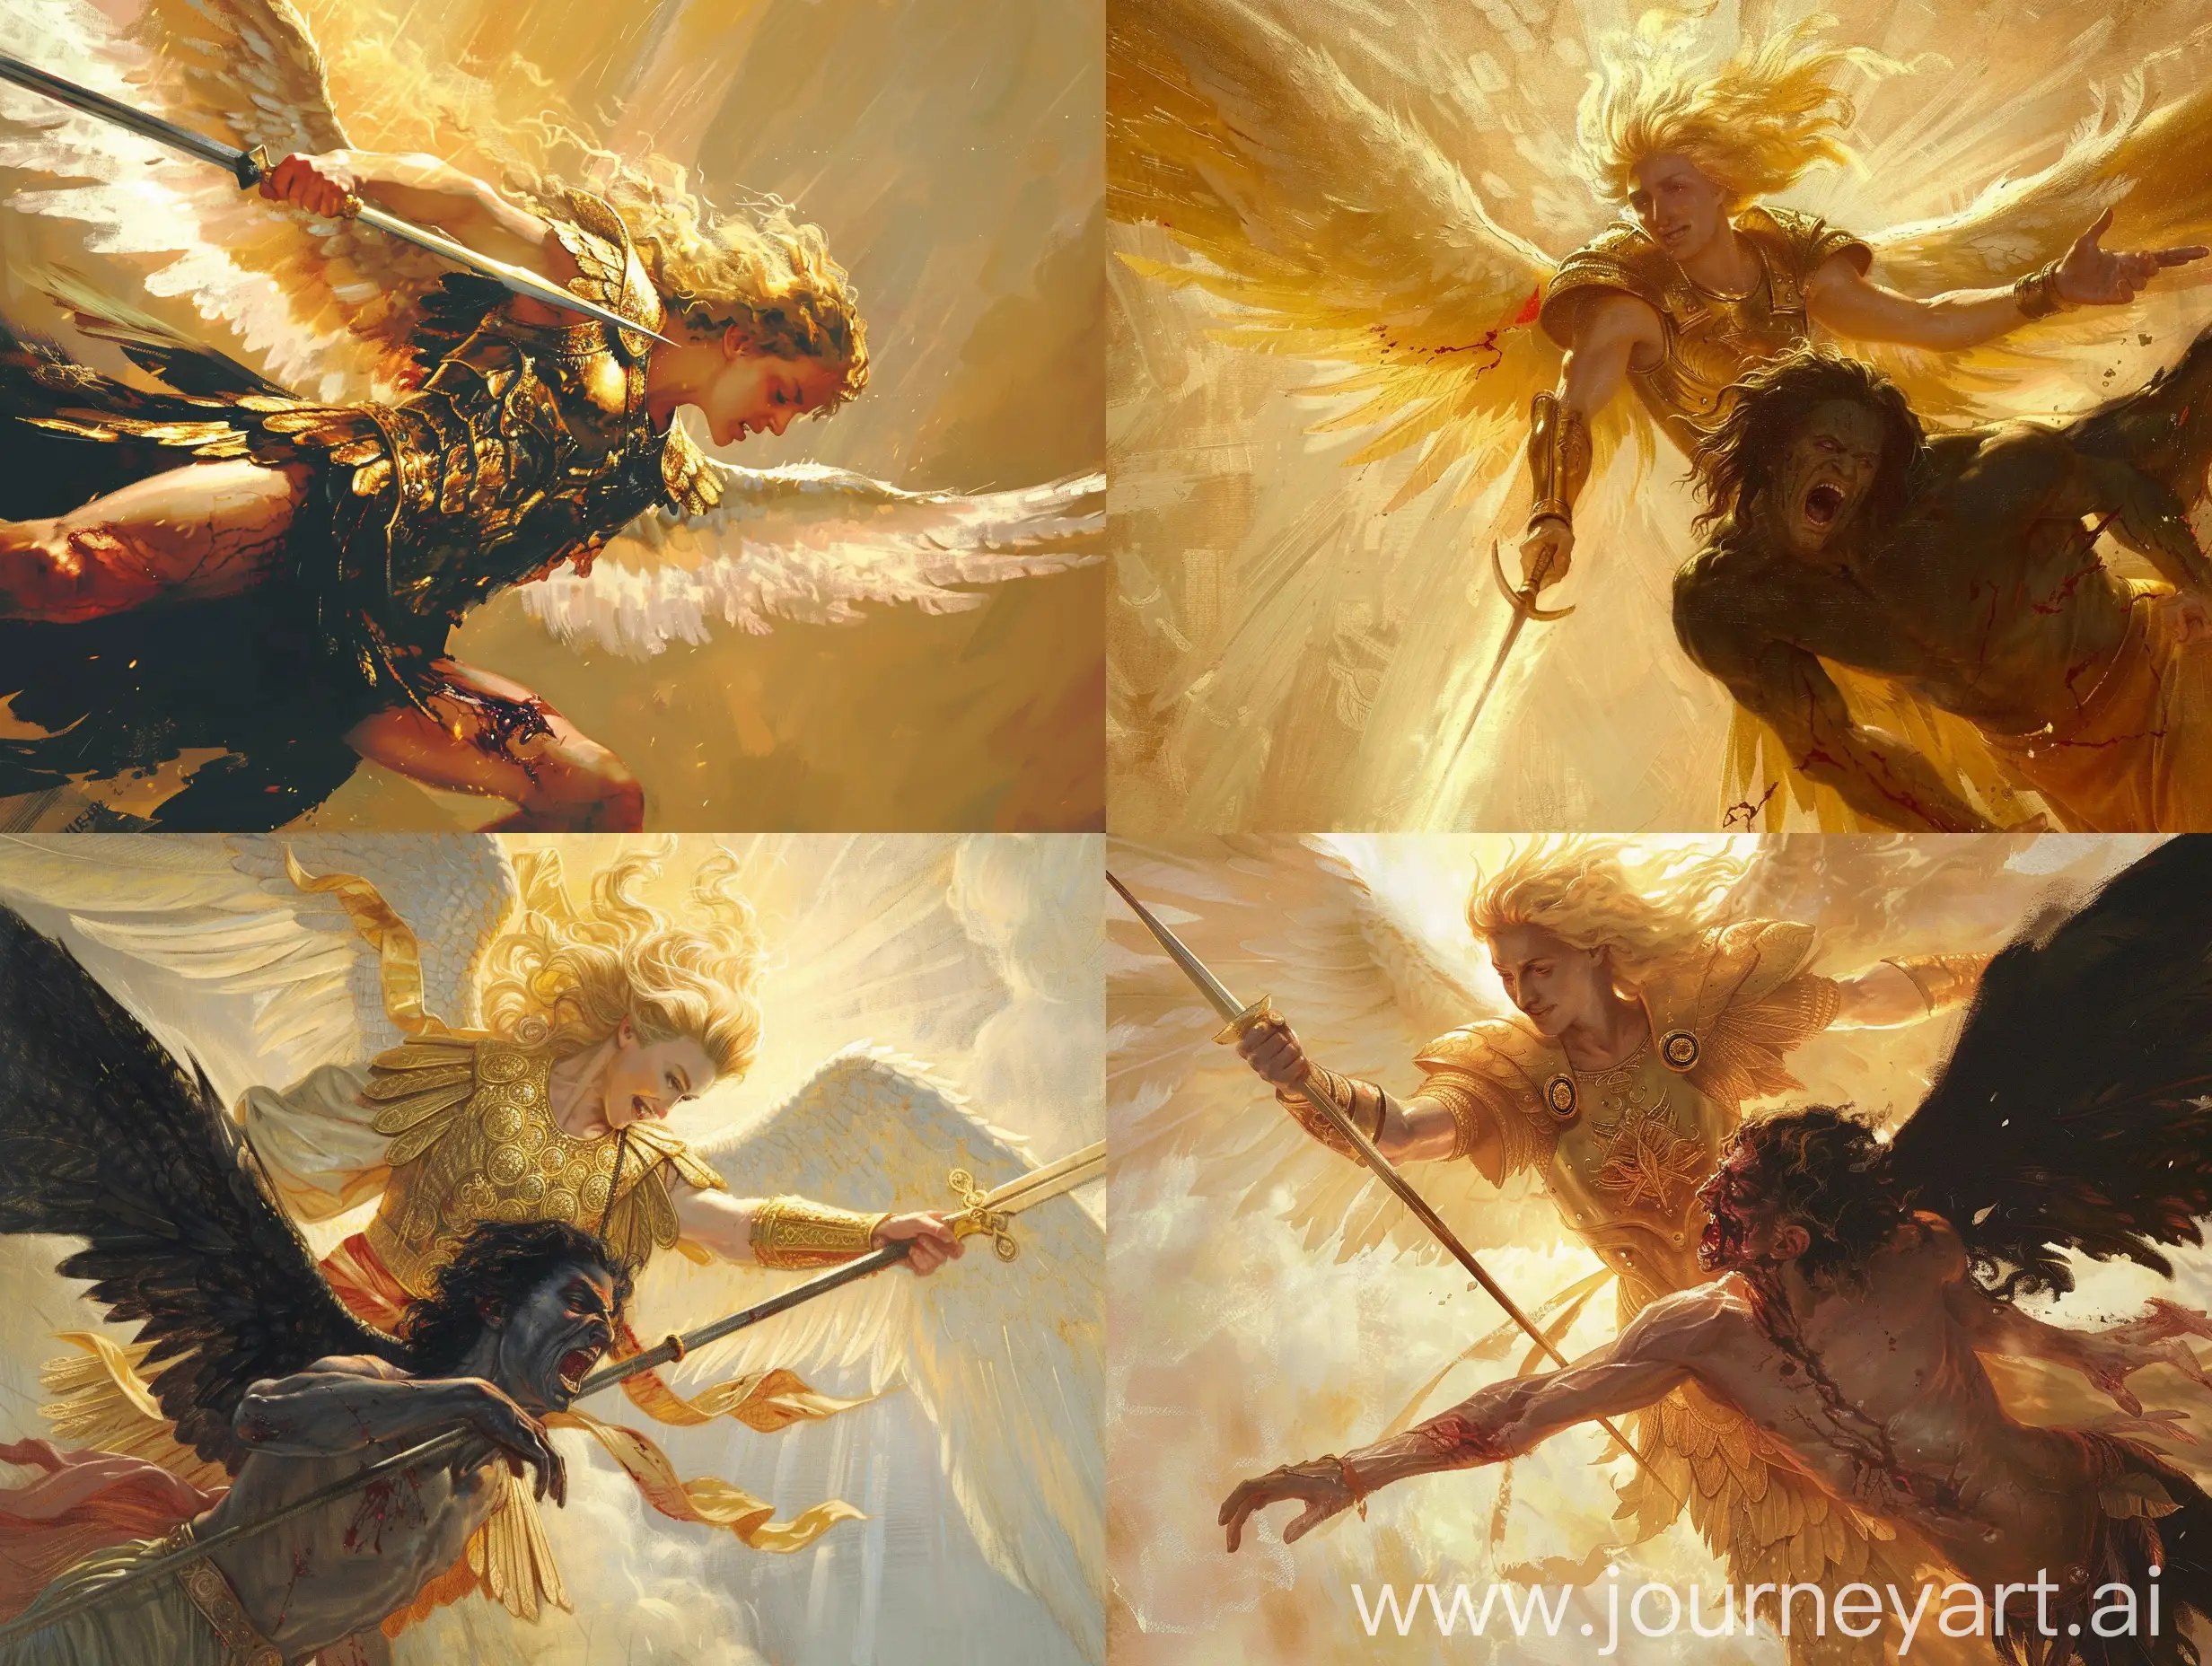 Epic-Battle-Archangel-Michael-Confronts-Lucifer-in-Renaissance-Style